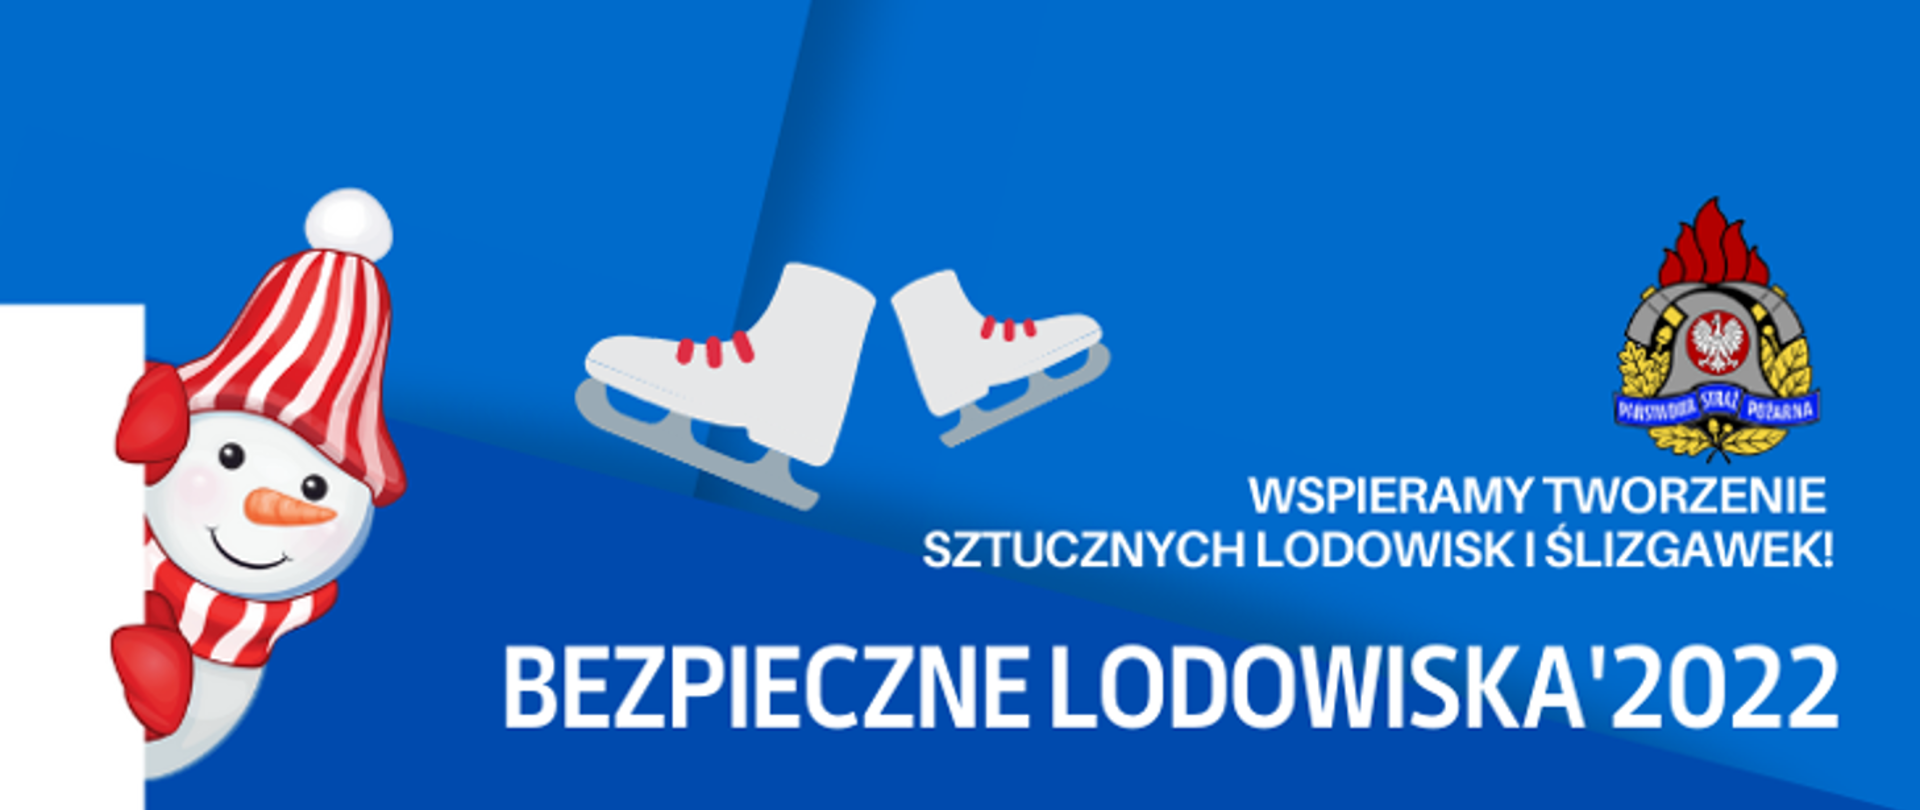 Logo akcji bezpieczne lodowisko. na niebieskim tle z lewej biały bałwanek, na środku łyżwy, po prawej tytuł akcji i logo PSP